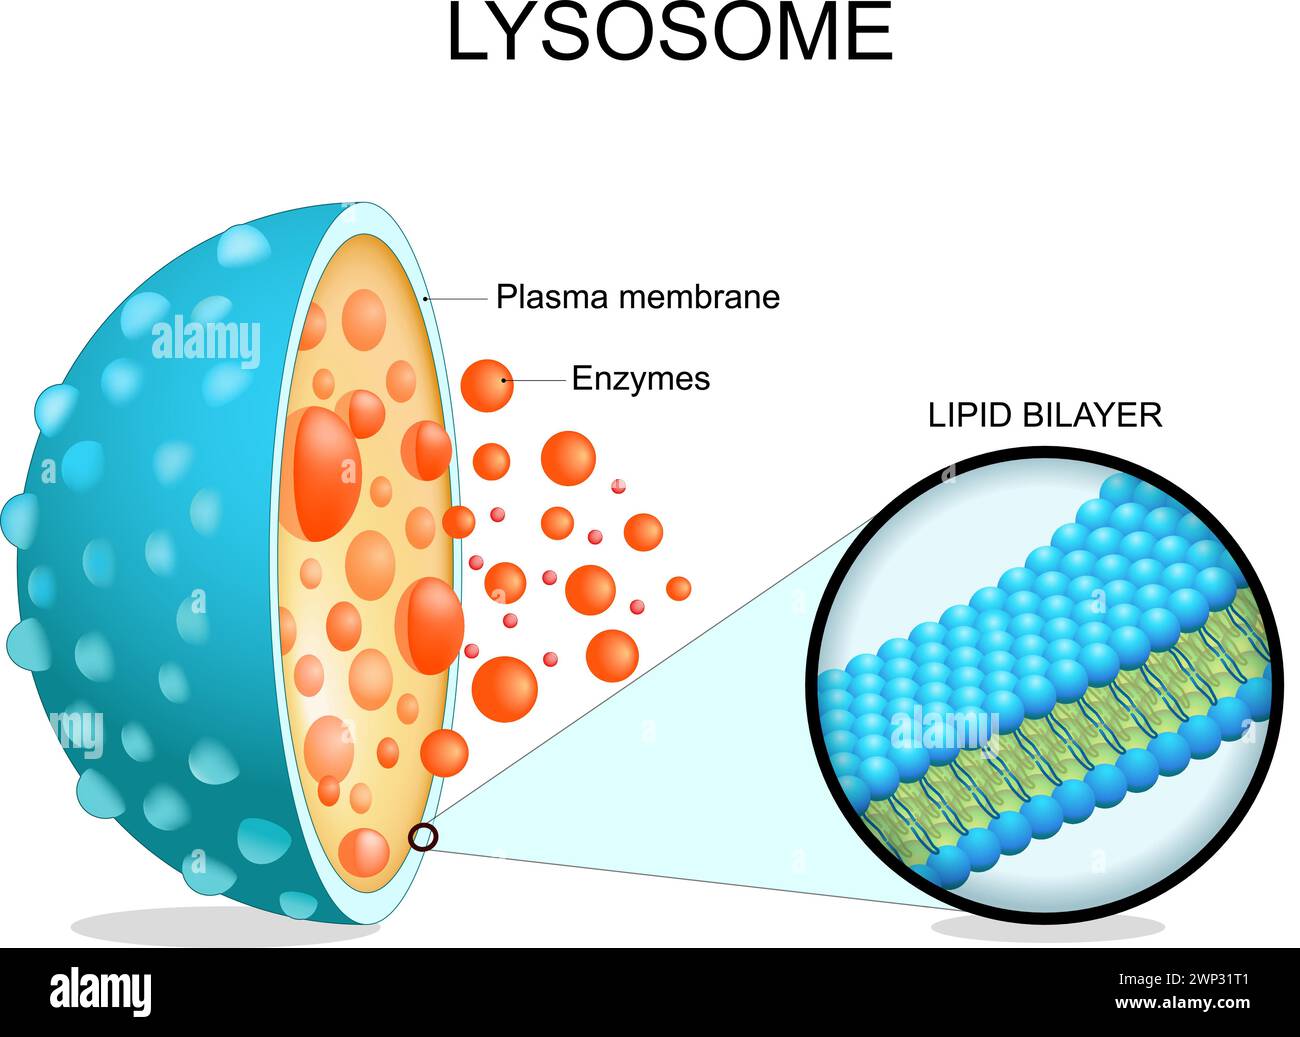 Anatomie des lysosomes. Section transversale d'un organite cellulaire. Gros plan d'une membrane bicouche lipidique, d'enzymes hydrolytiques, de protéines de transport. Autophagie. Vecteur i Illustration de Vecteur